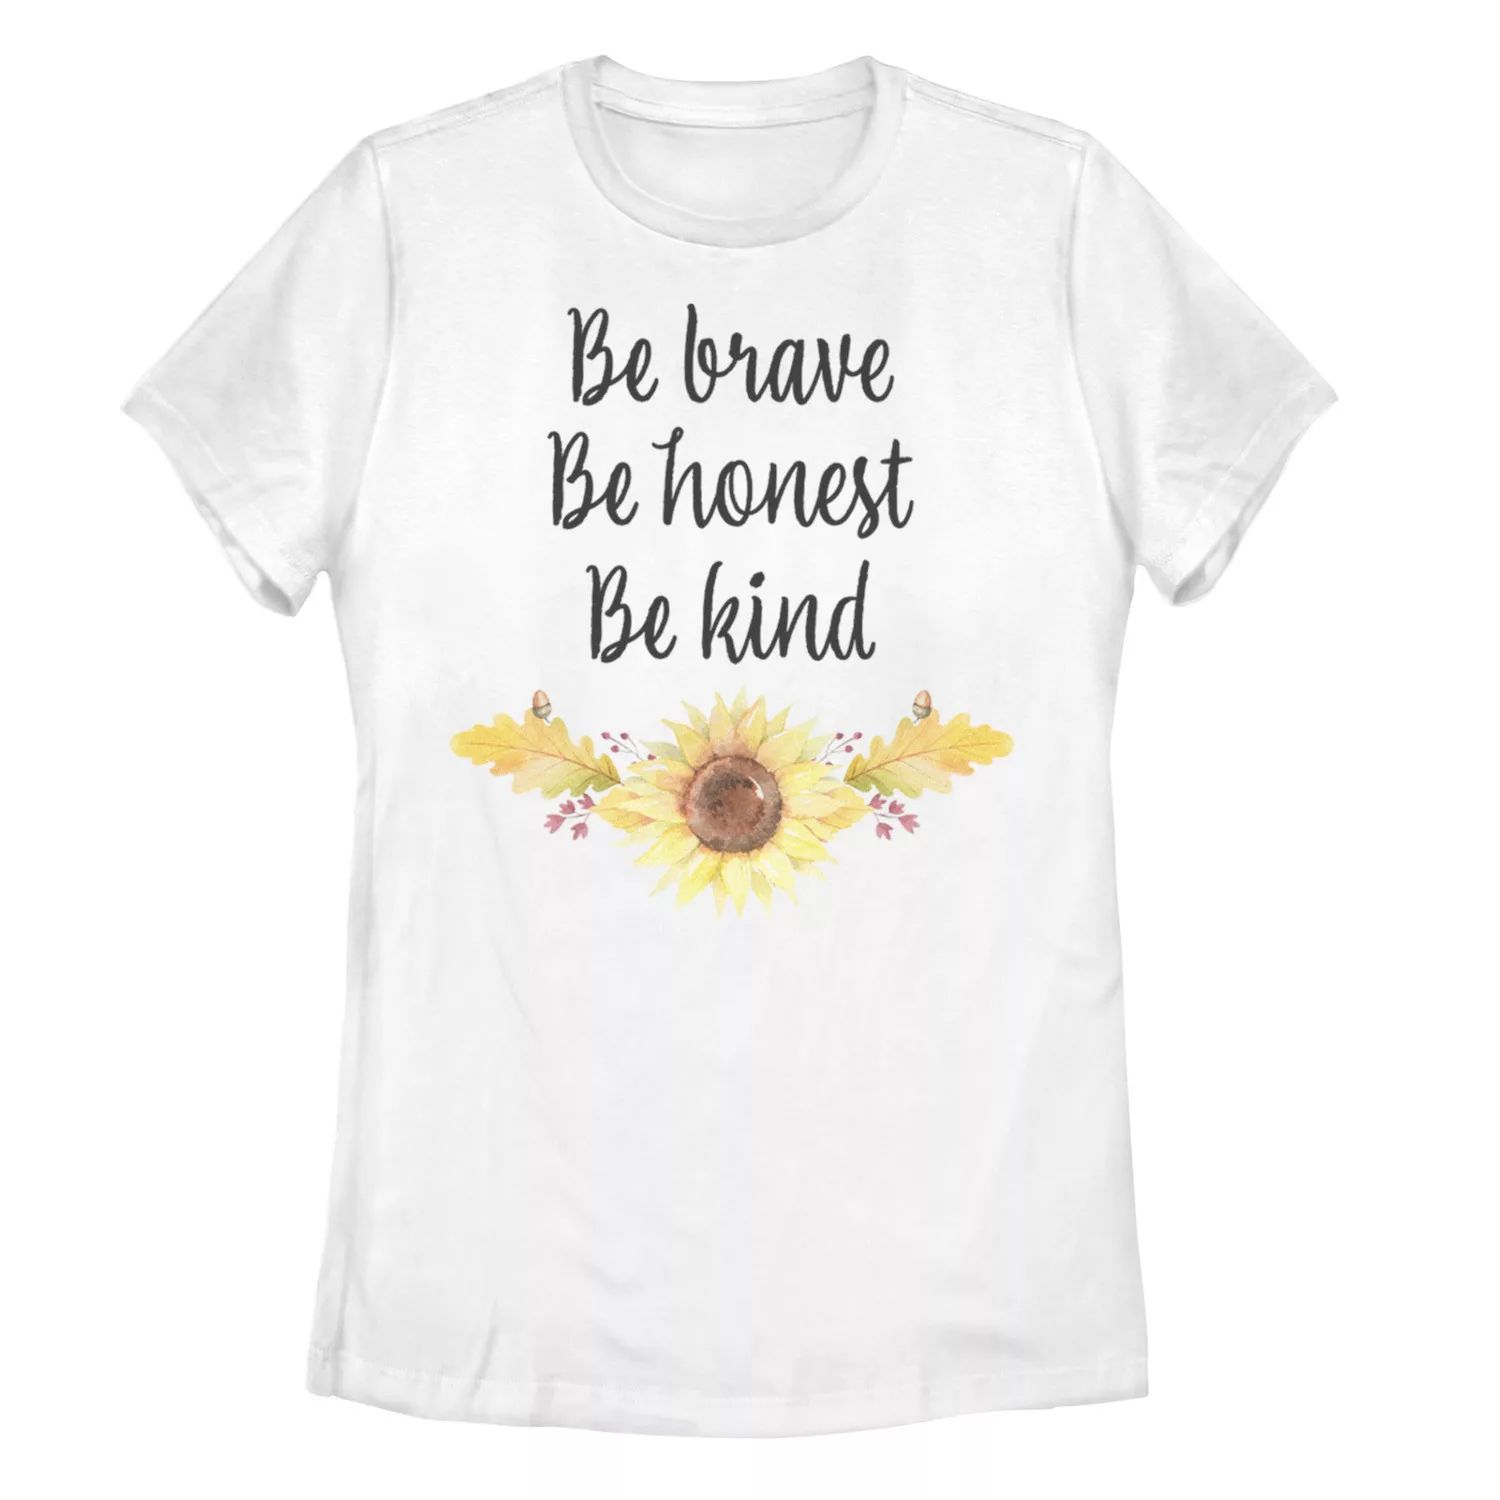 Детская футболка Be Brave Honest Kind с рисунком детская футболка be kind 116 белый